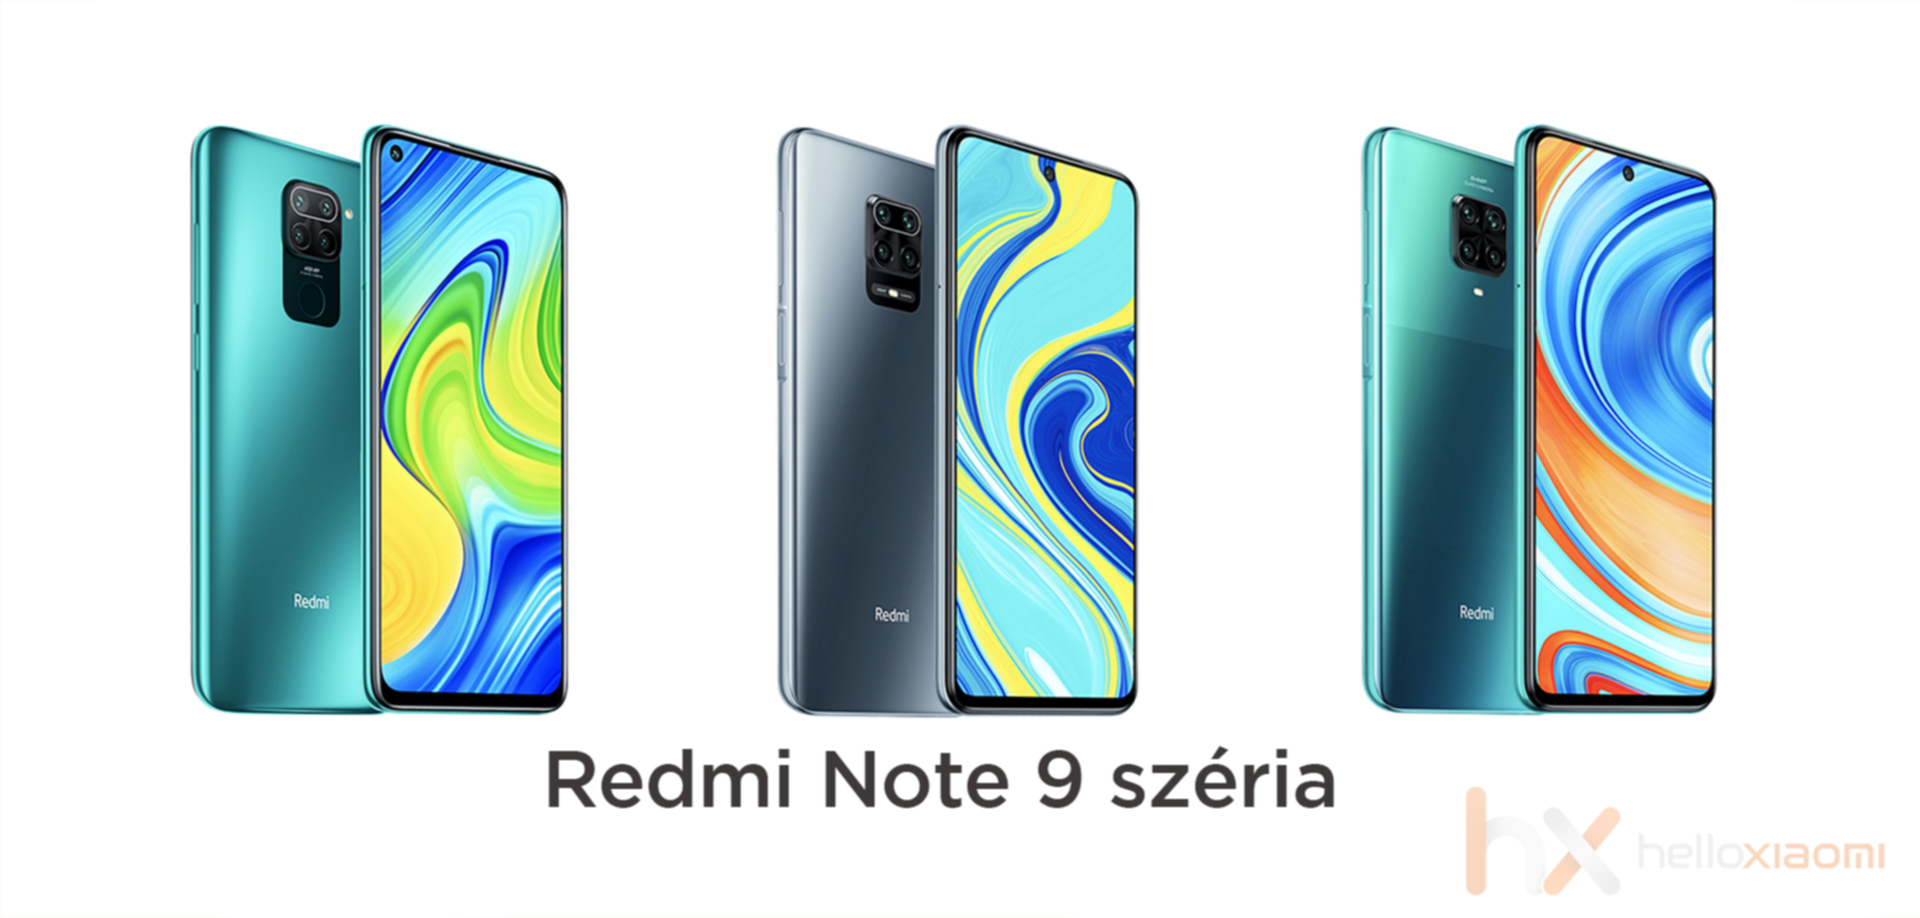 Redmi Note 6 Global